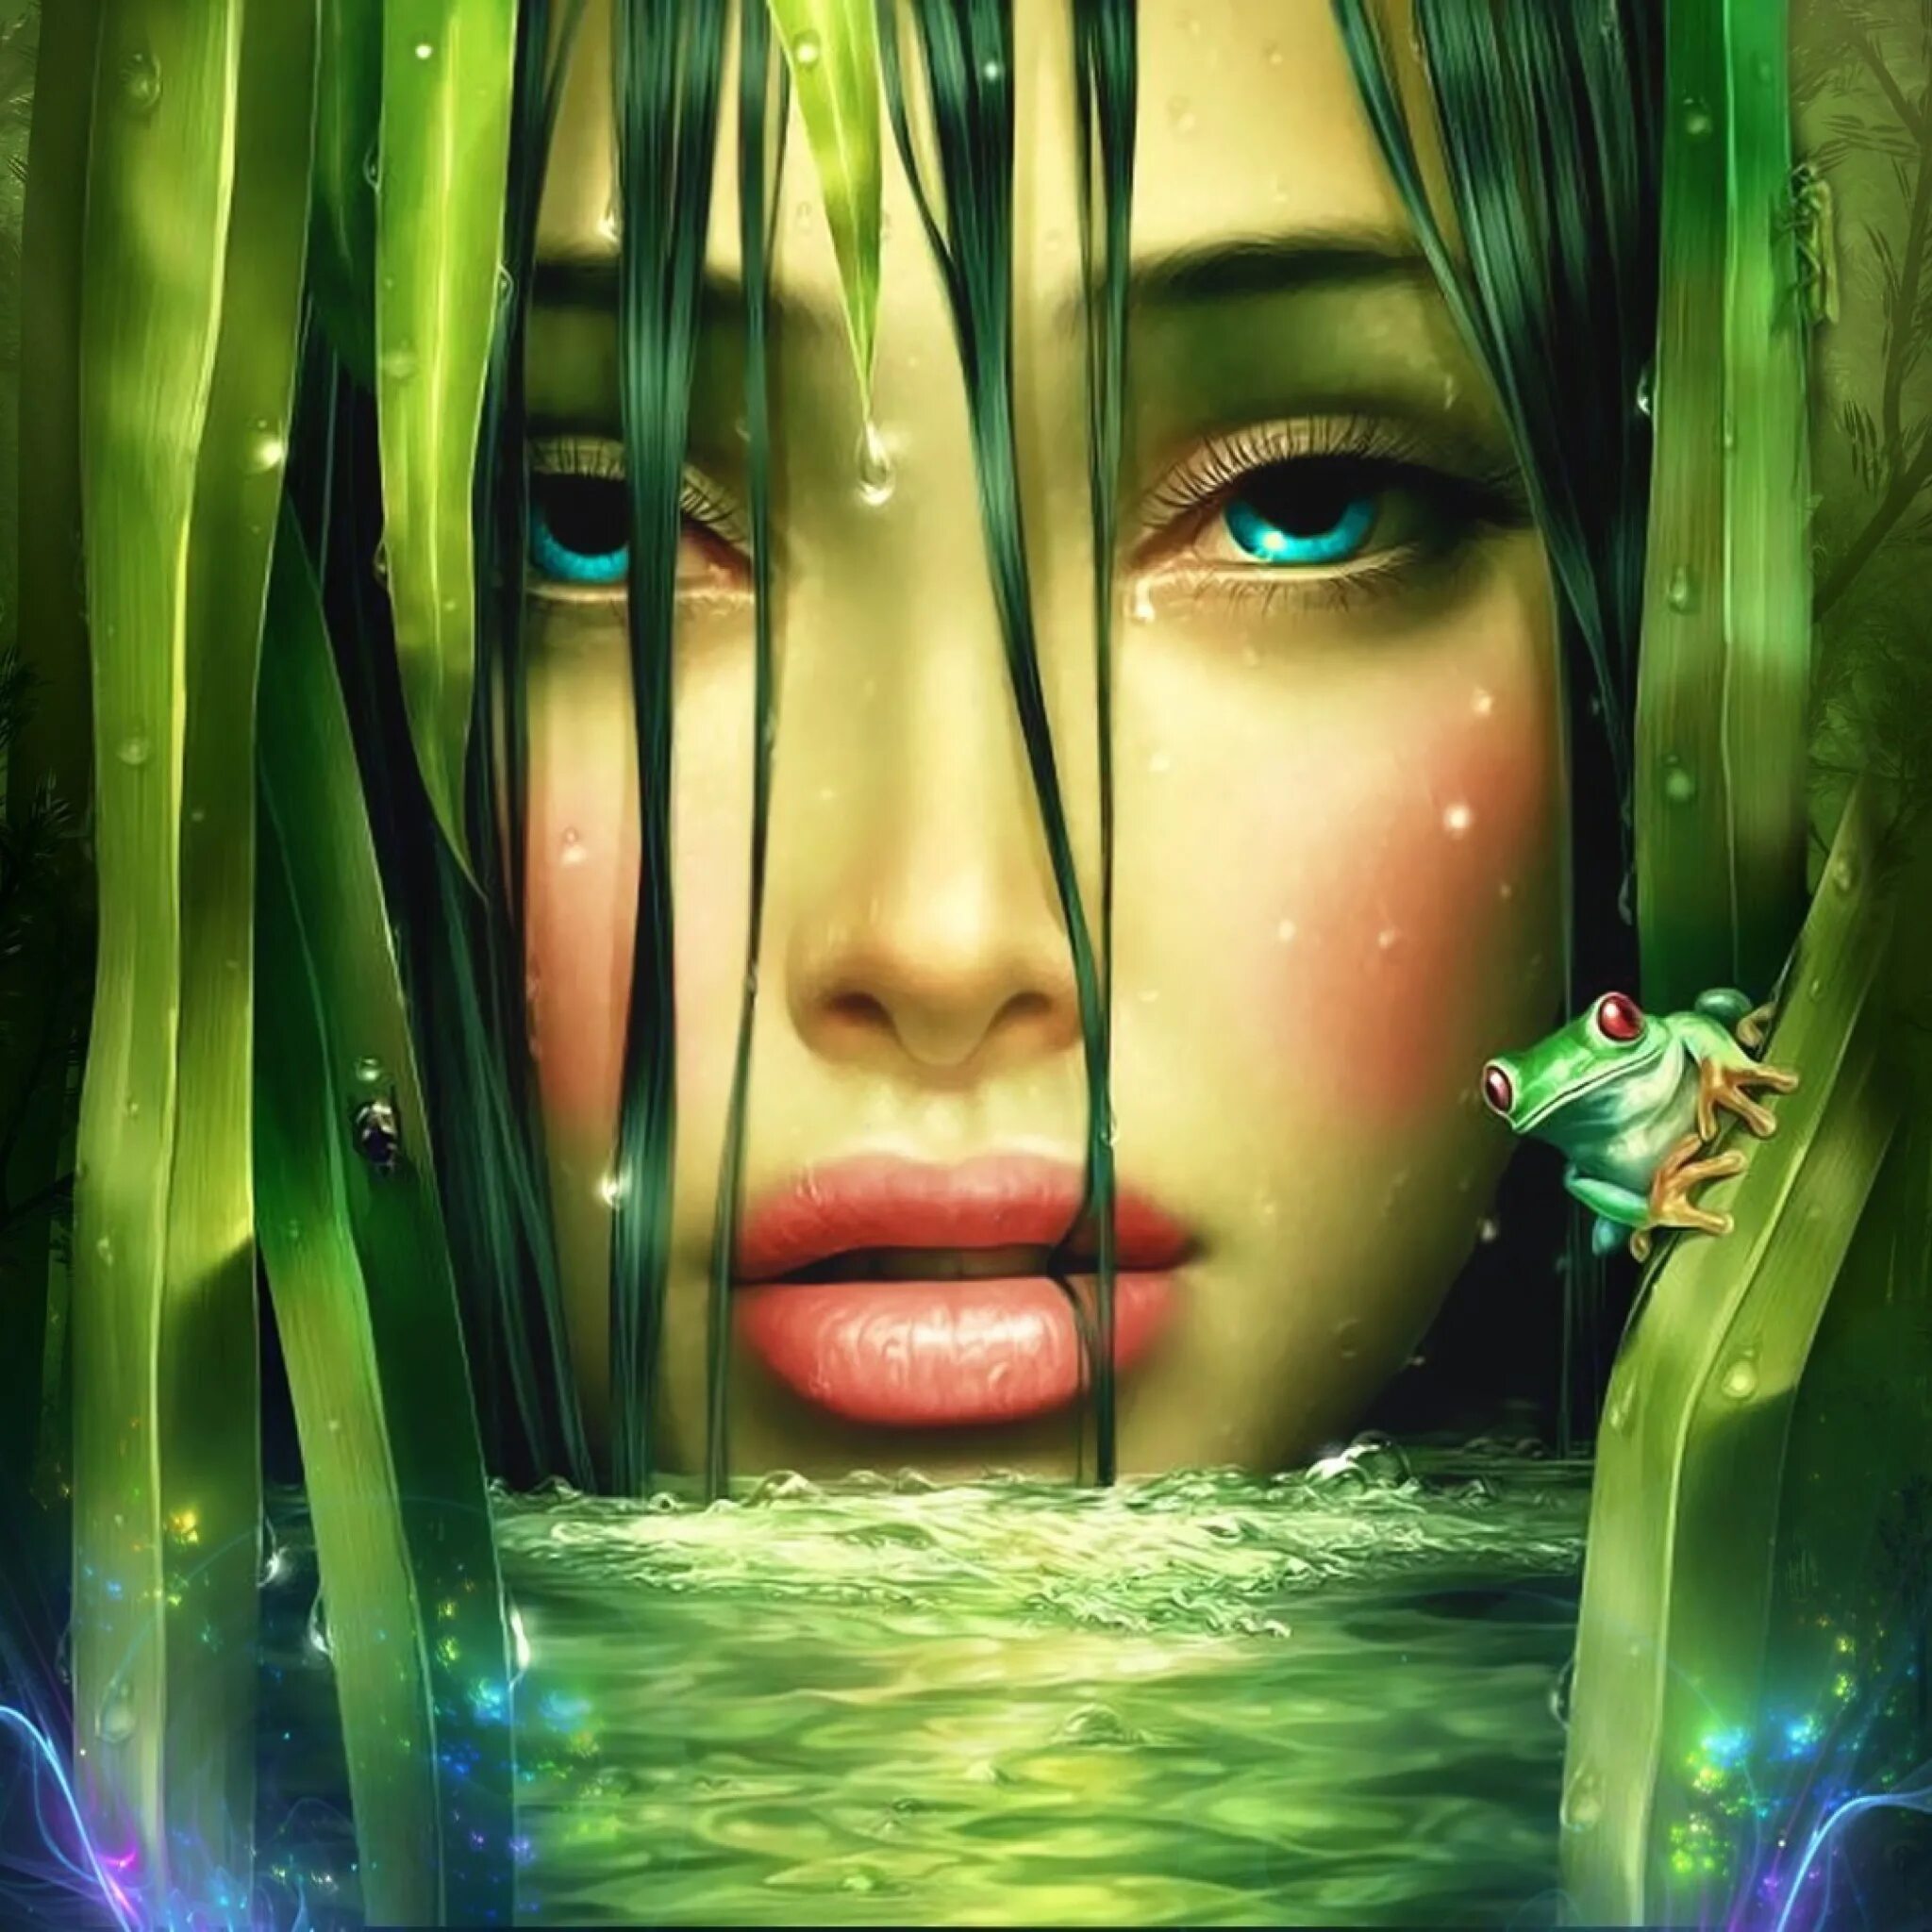 Художник Tang Yuehui. Девушка и лягушка. Фотообои лицо девушки. Девушка в зеленом.